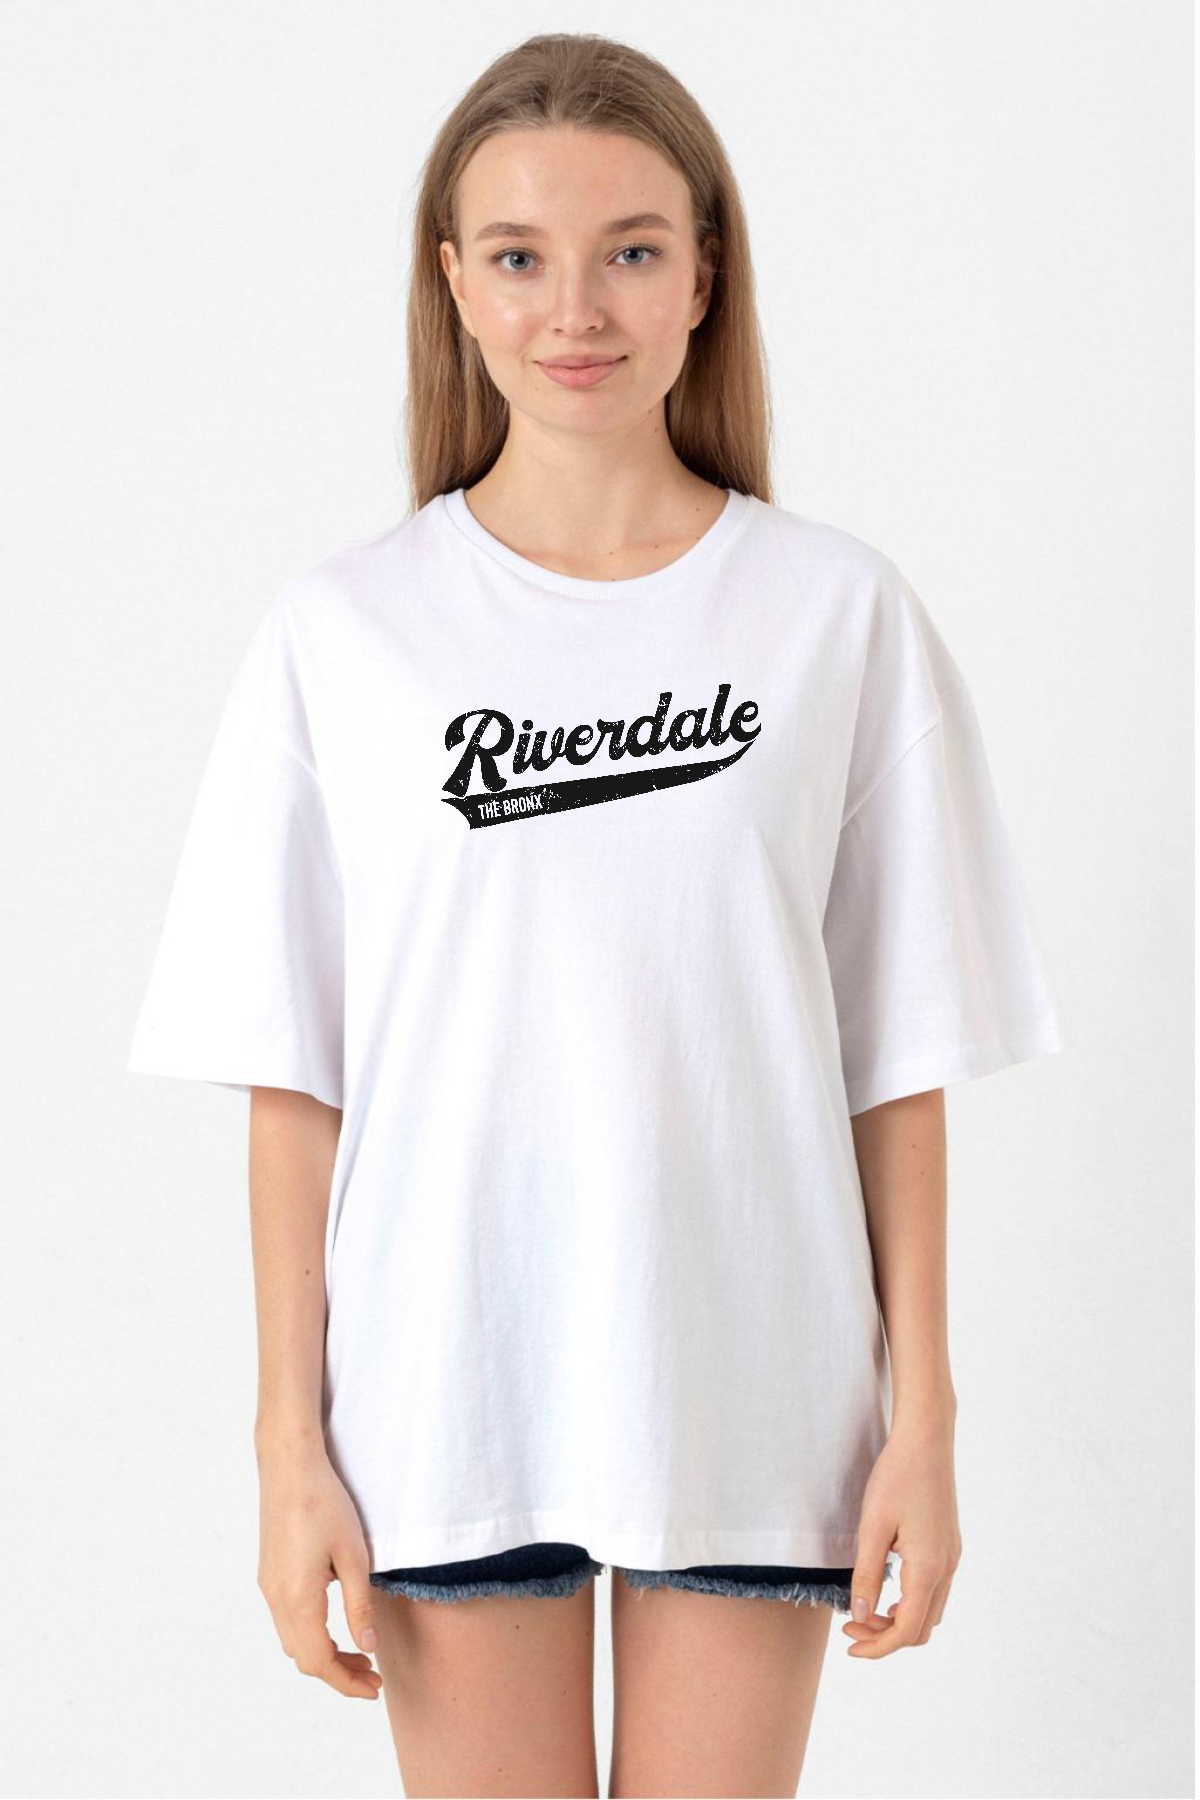 Riverdale Bronx New York City Beyaz Kadın Oversize Tshirt